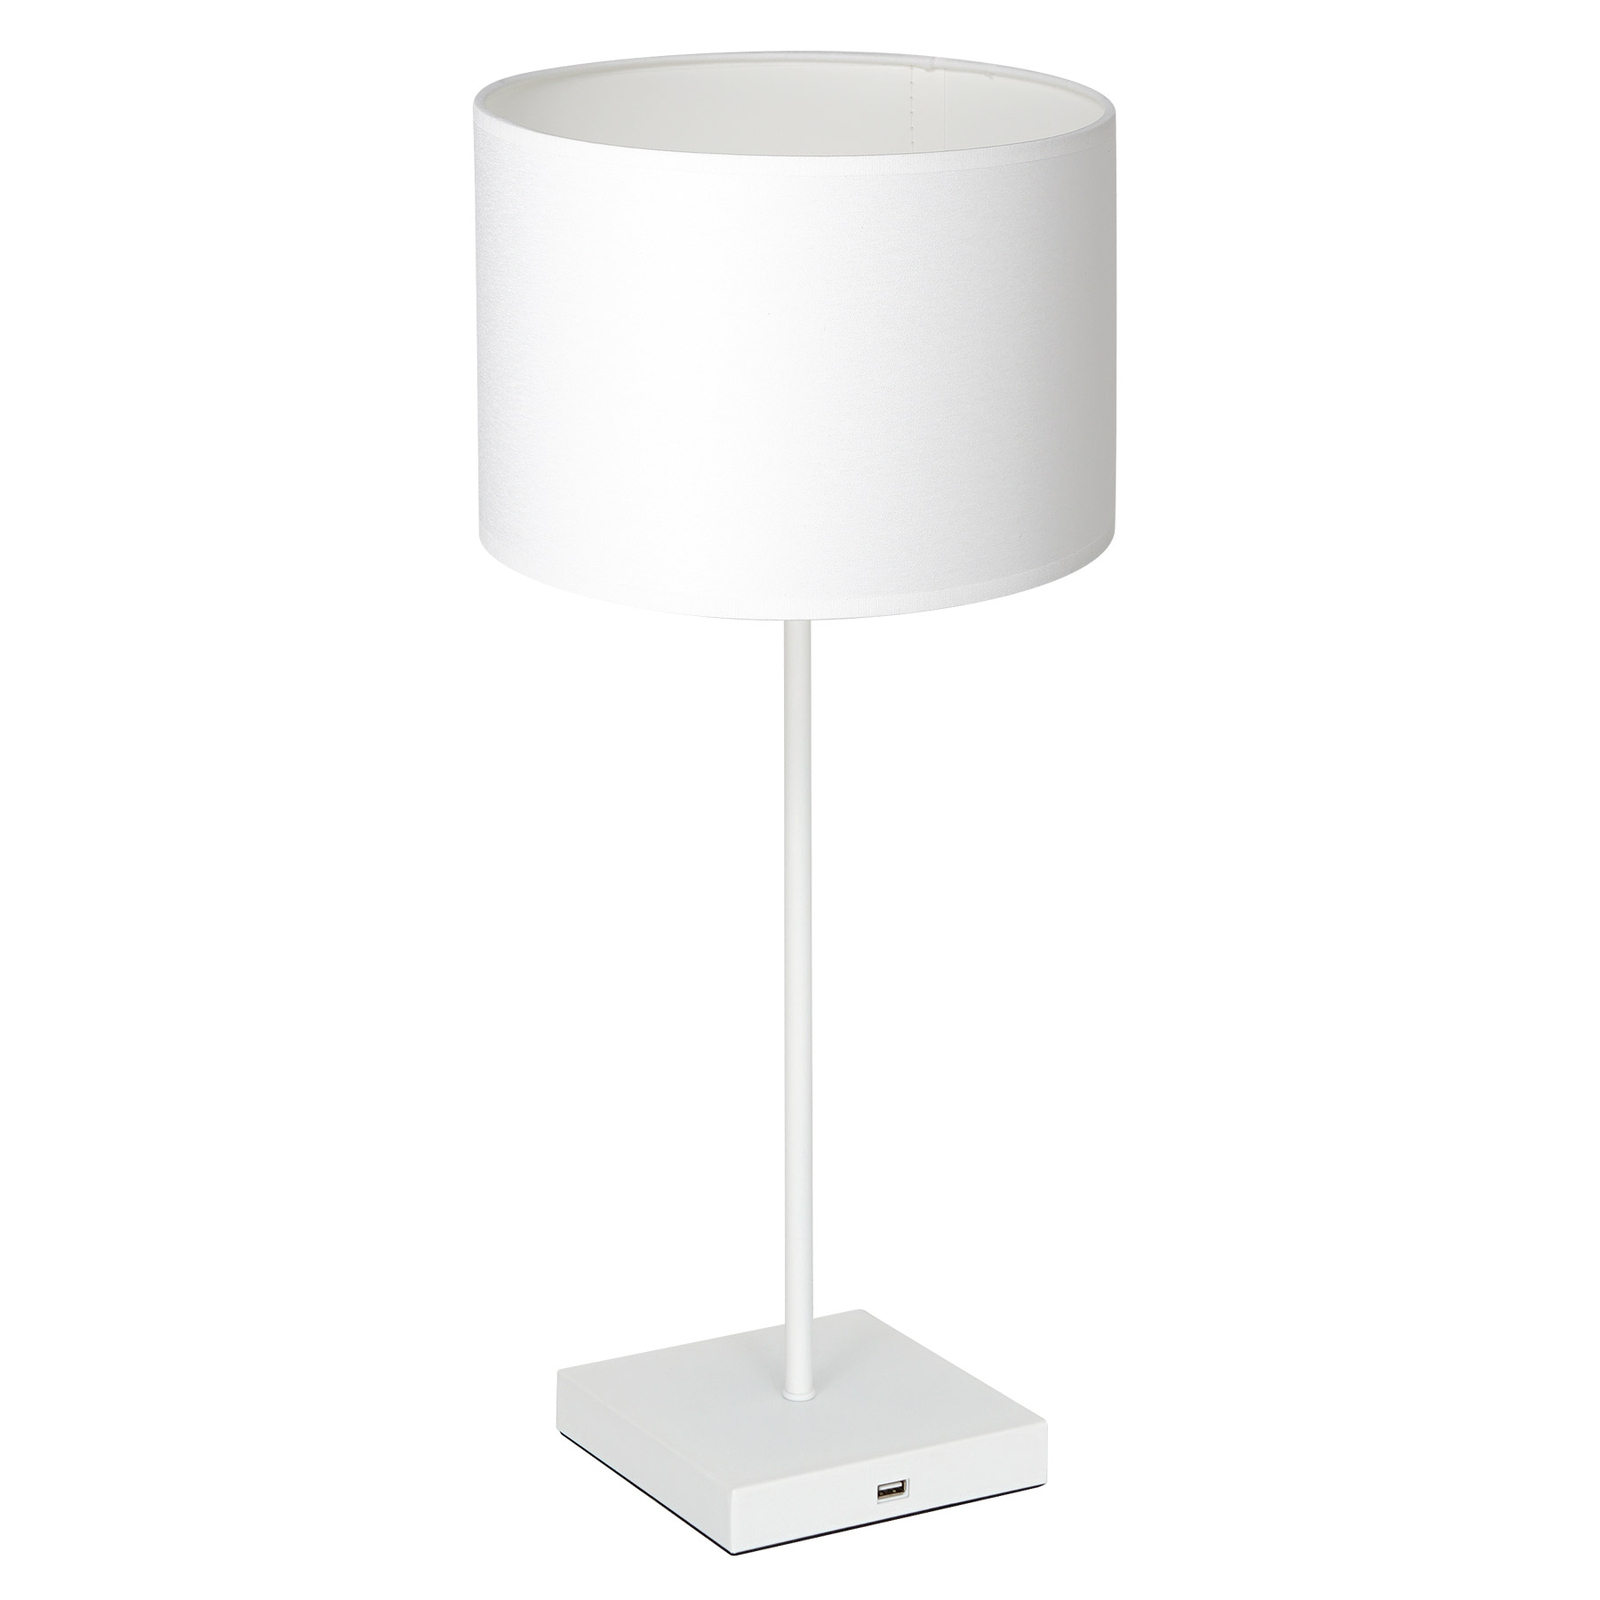 Bordslampa Table vit, skärm cylindrisk vit